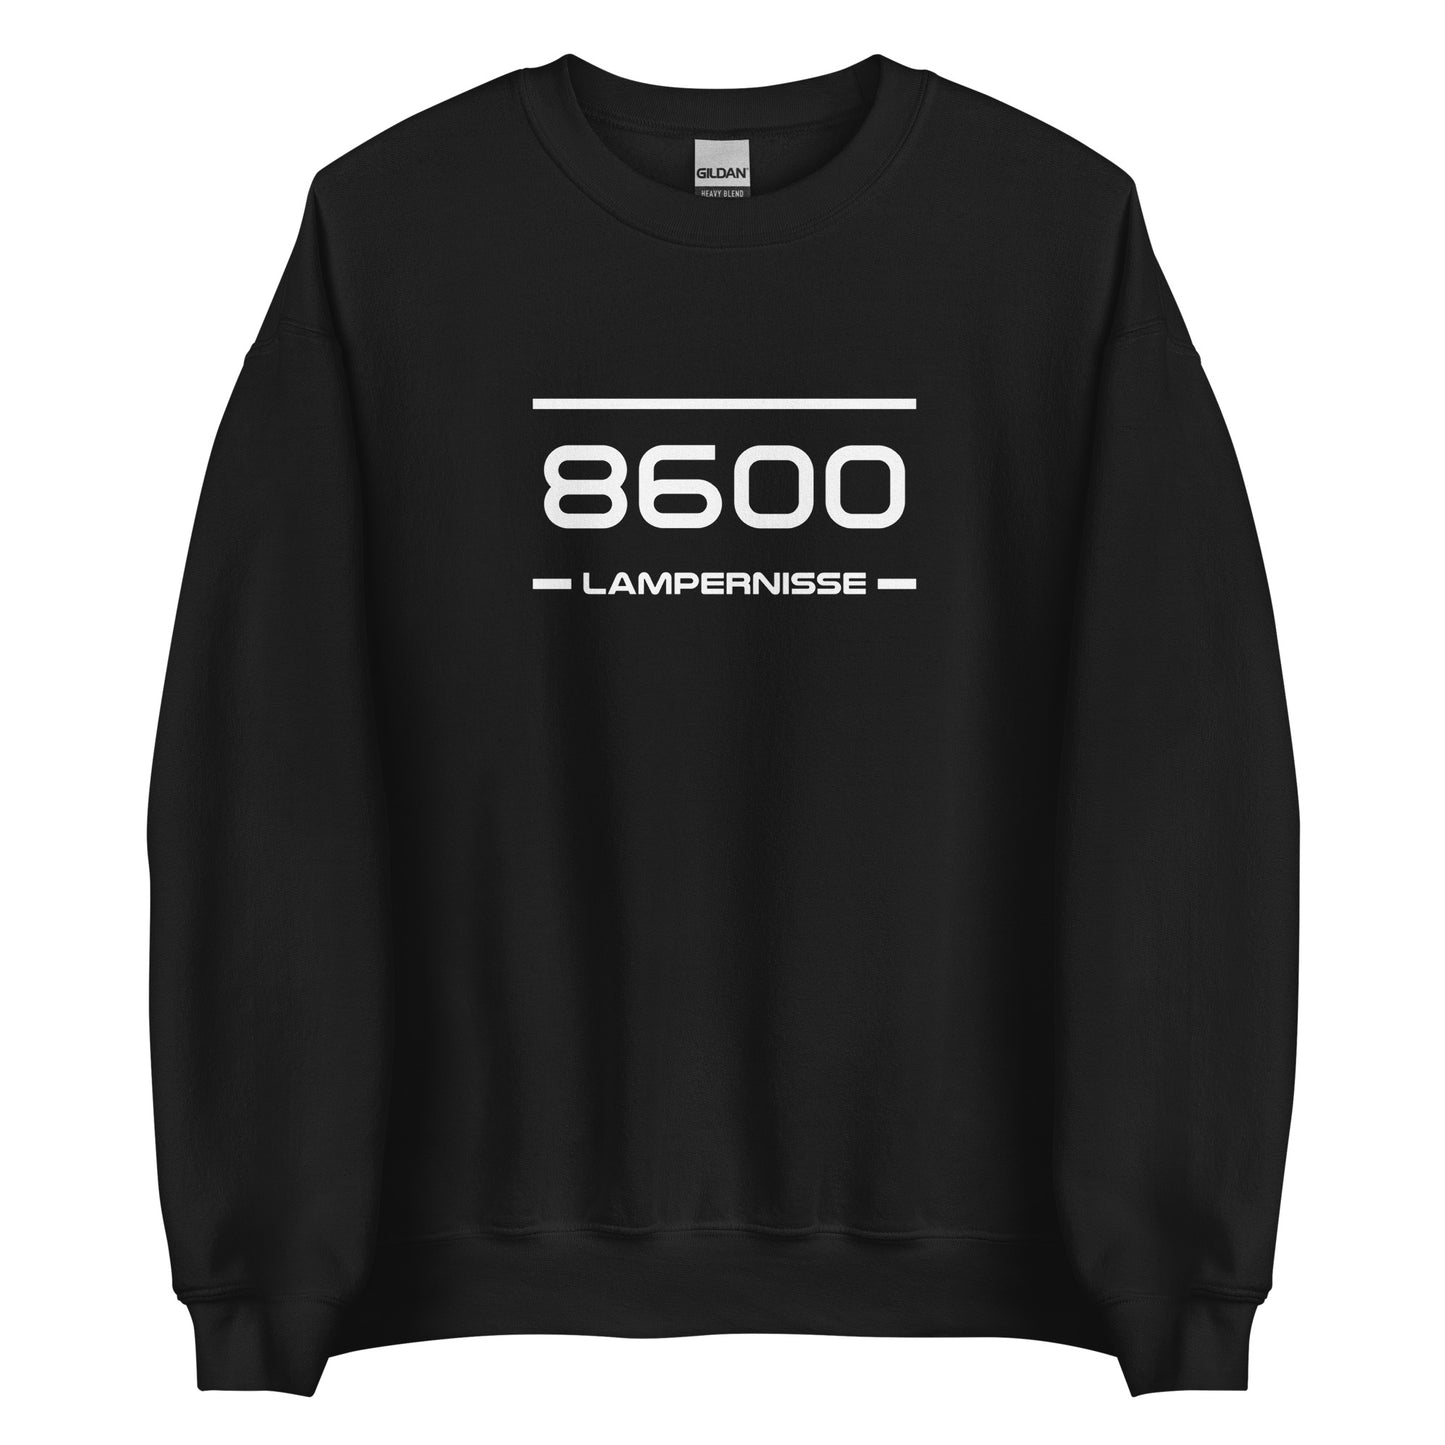 Sweater - 8600 - Lampernisse (M/V)